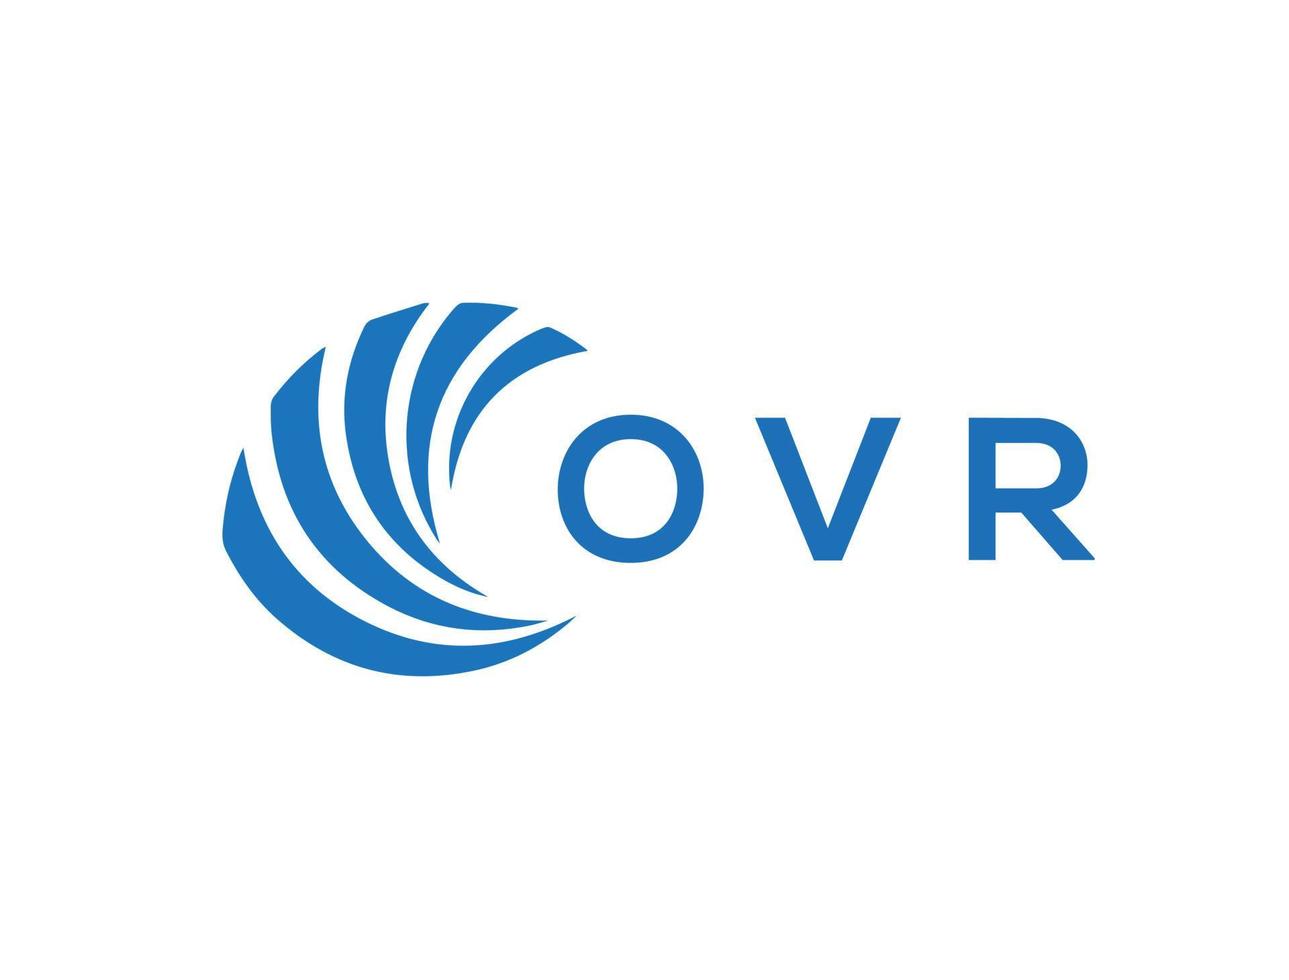 OVr letter logo design on white background. OVr creative circle letter logo concept. OVr letter design. vector